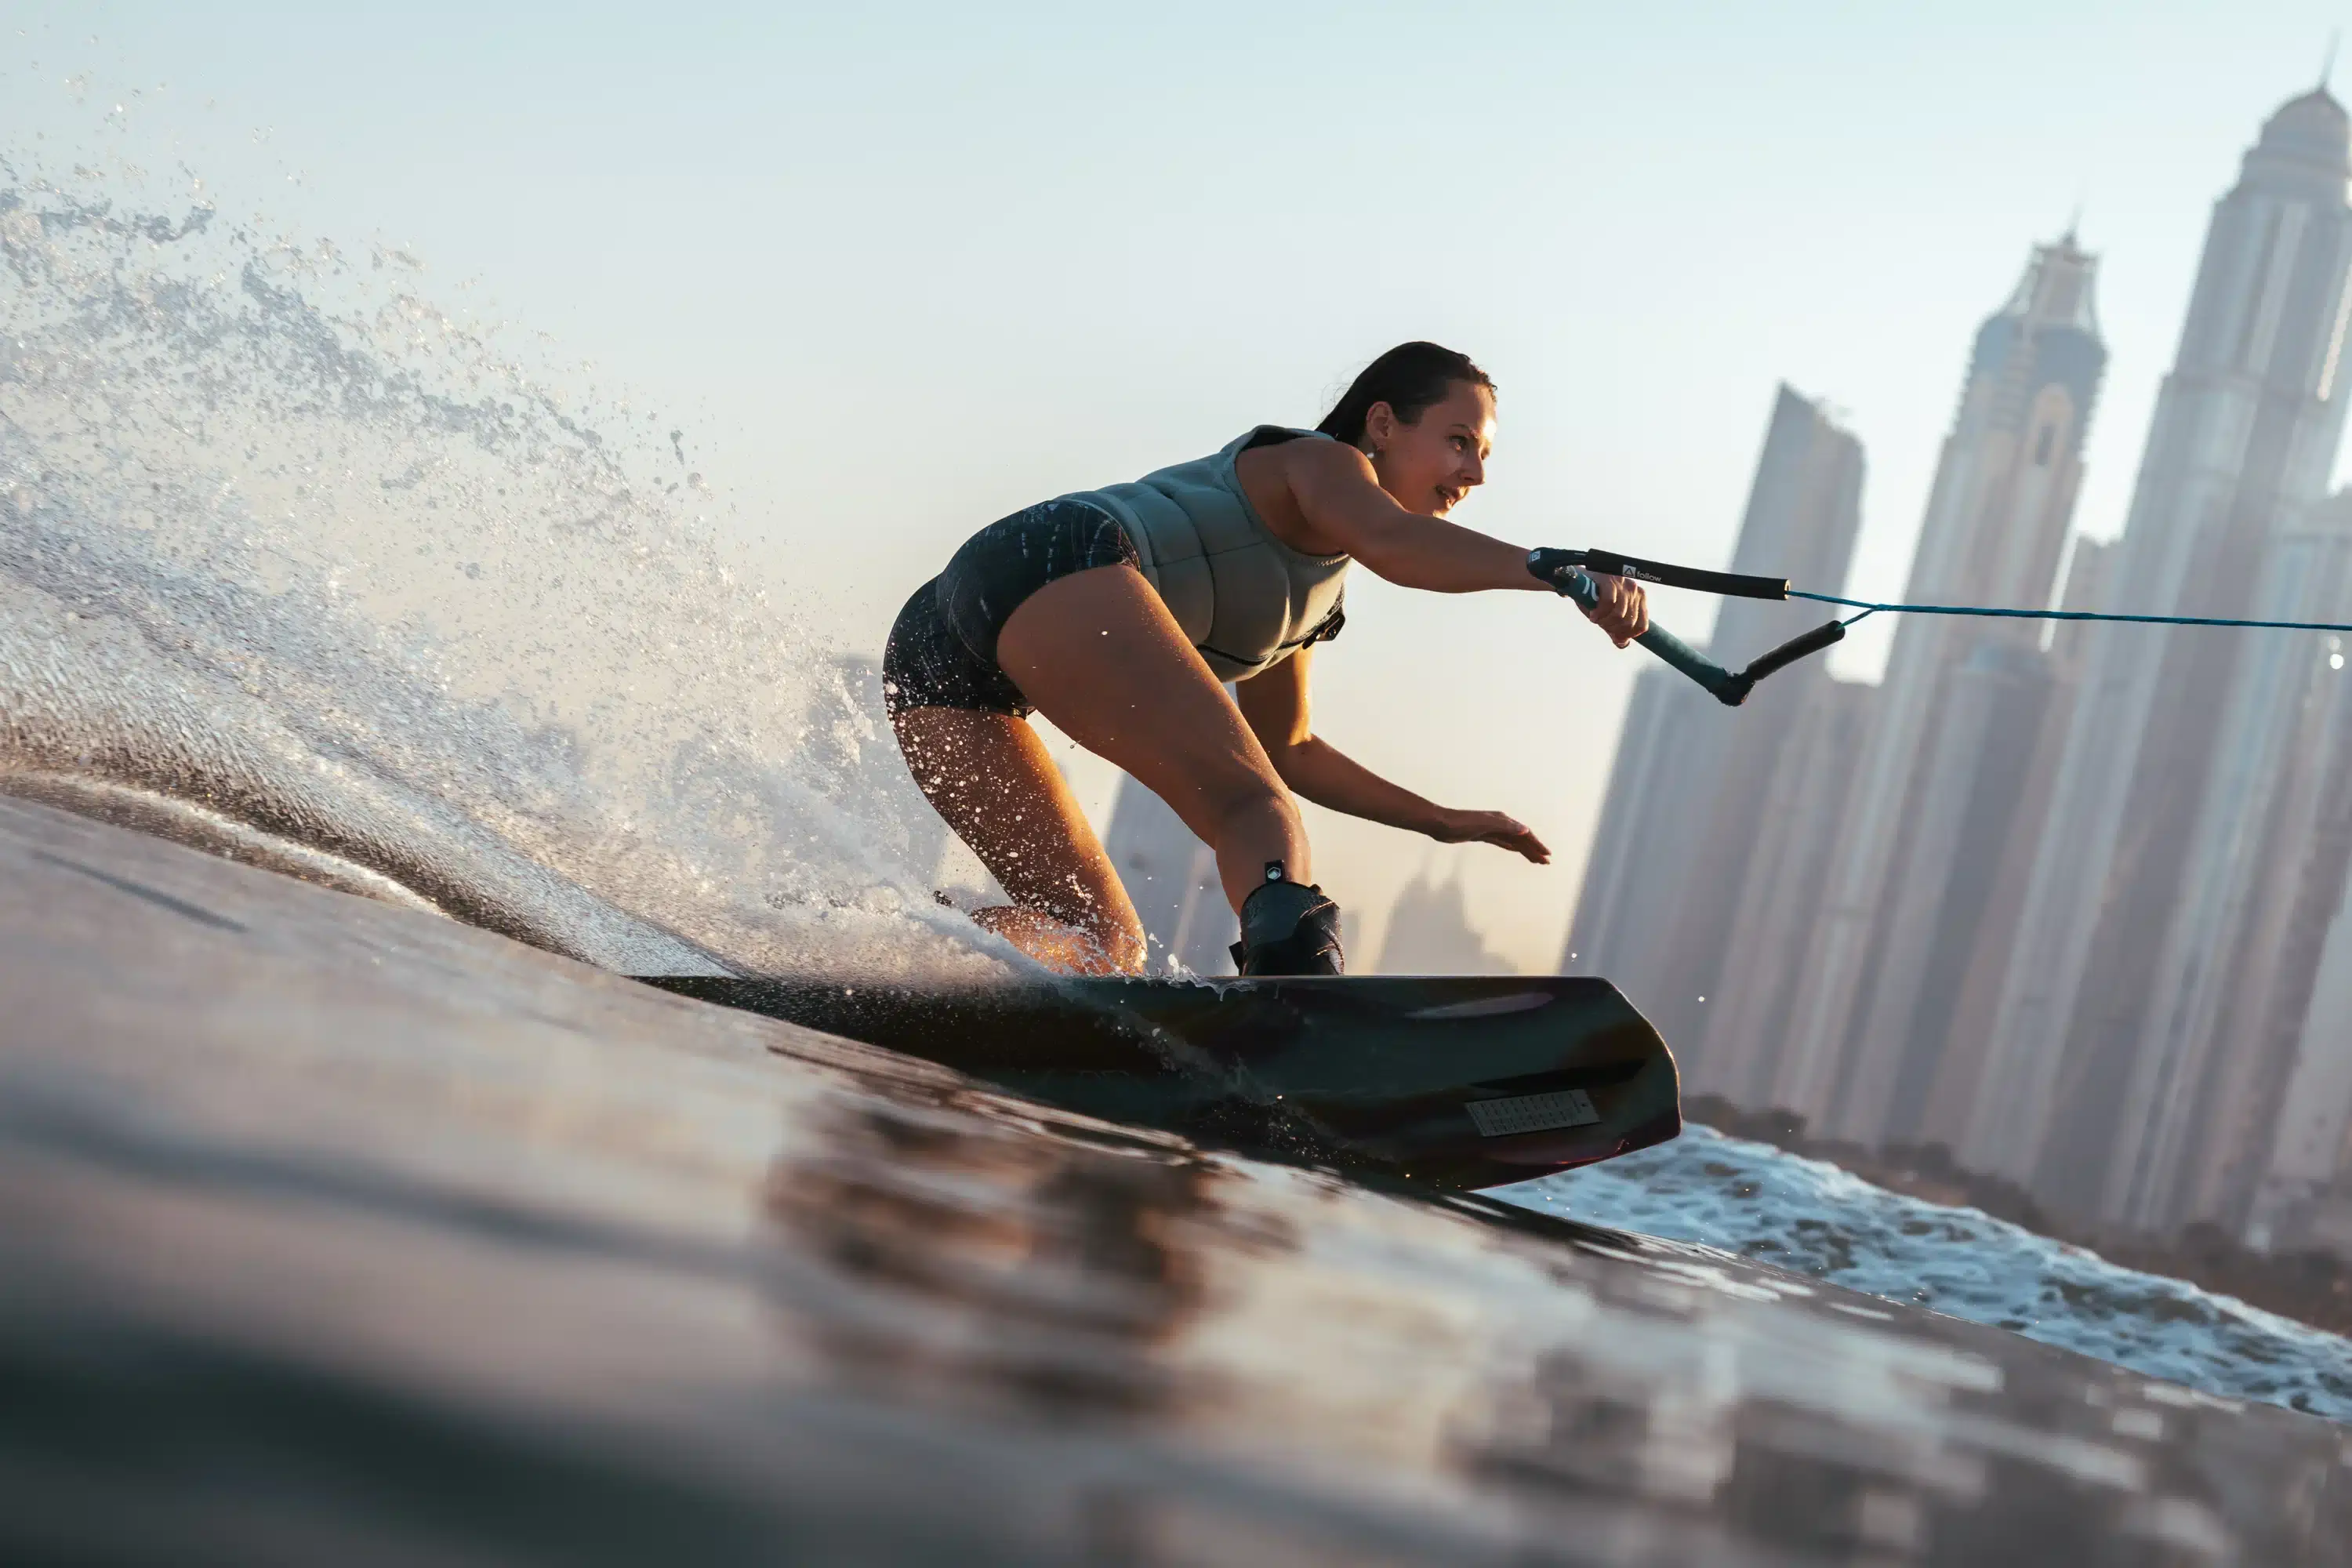 surfing in Dubai